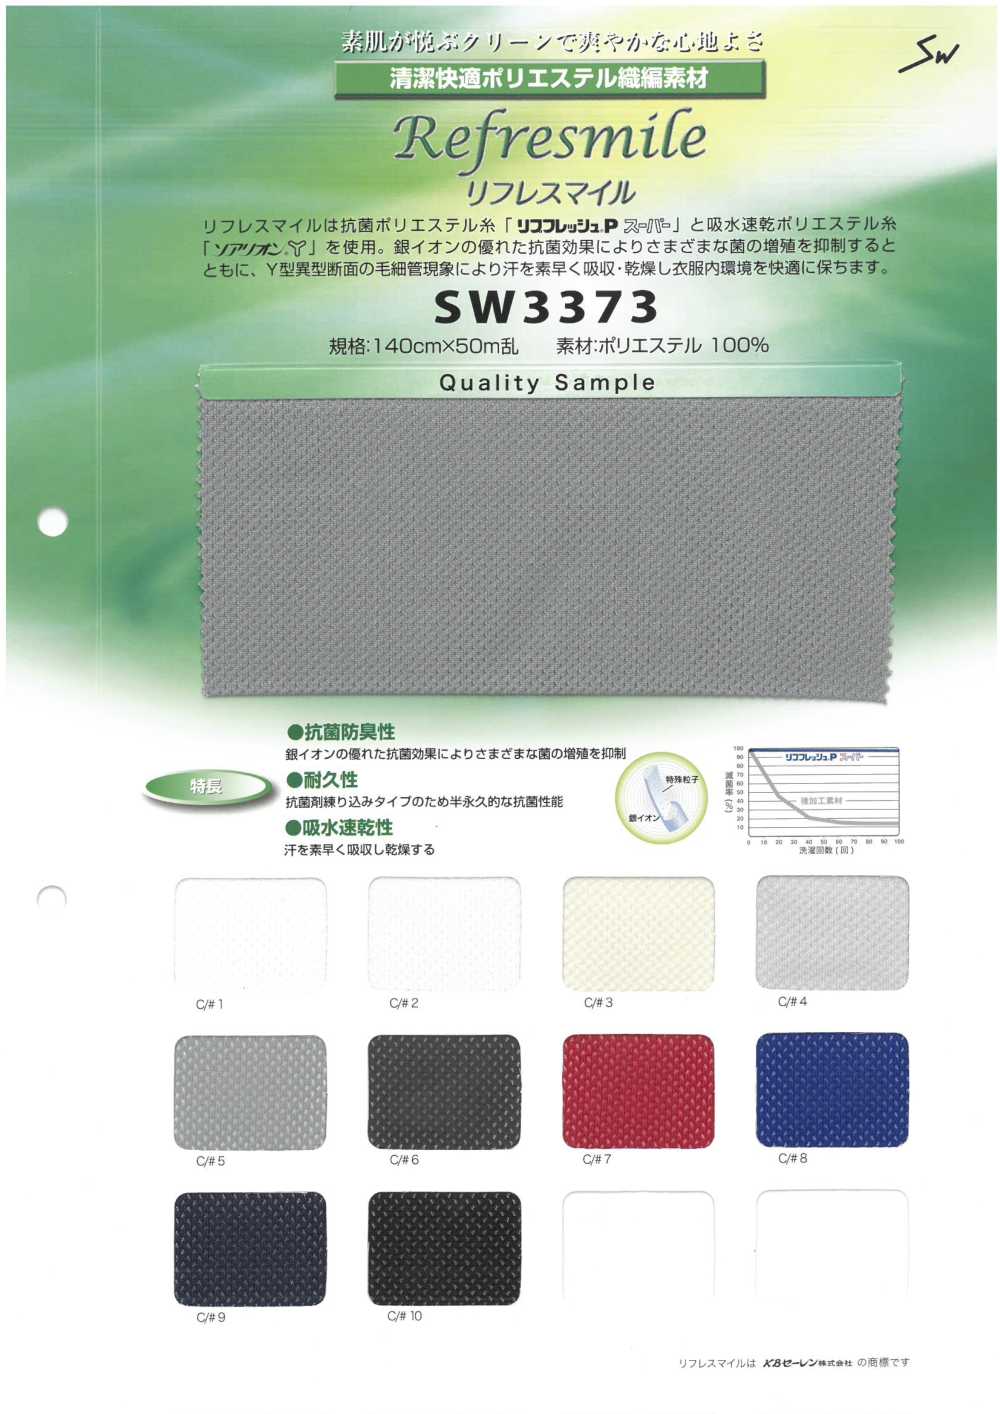 SW3373 Malha Antibacteriana, Absorvente De Umidade E Secagem Rápida[Têxtil / Tecido] Fibras Sanwa